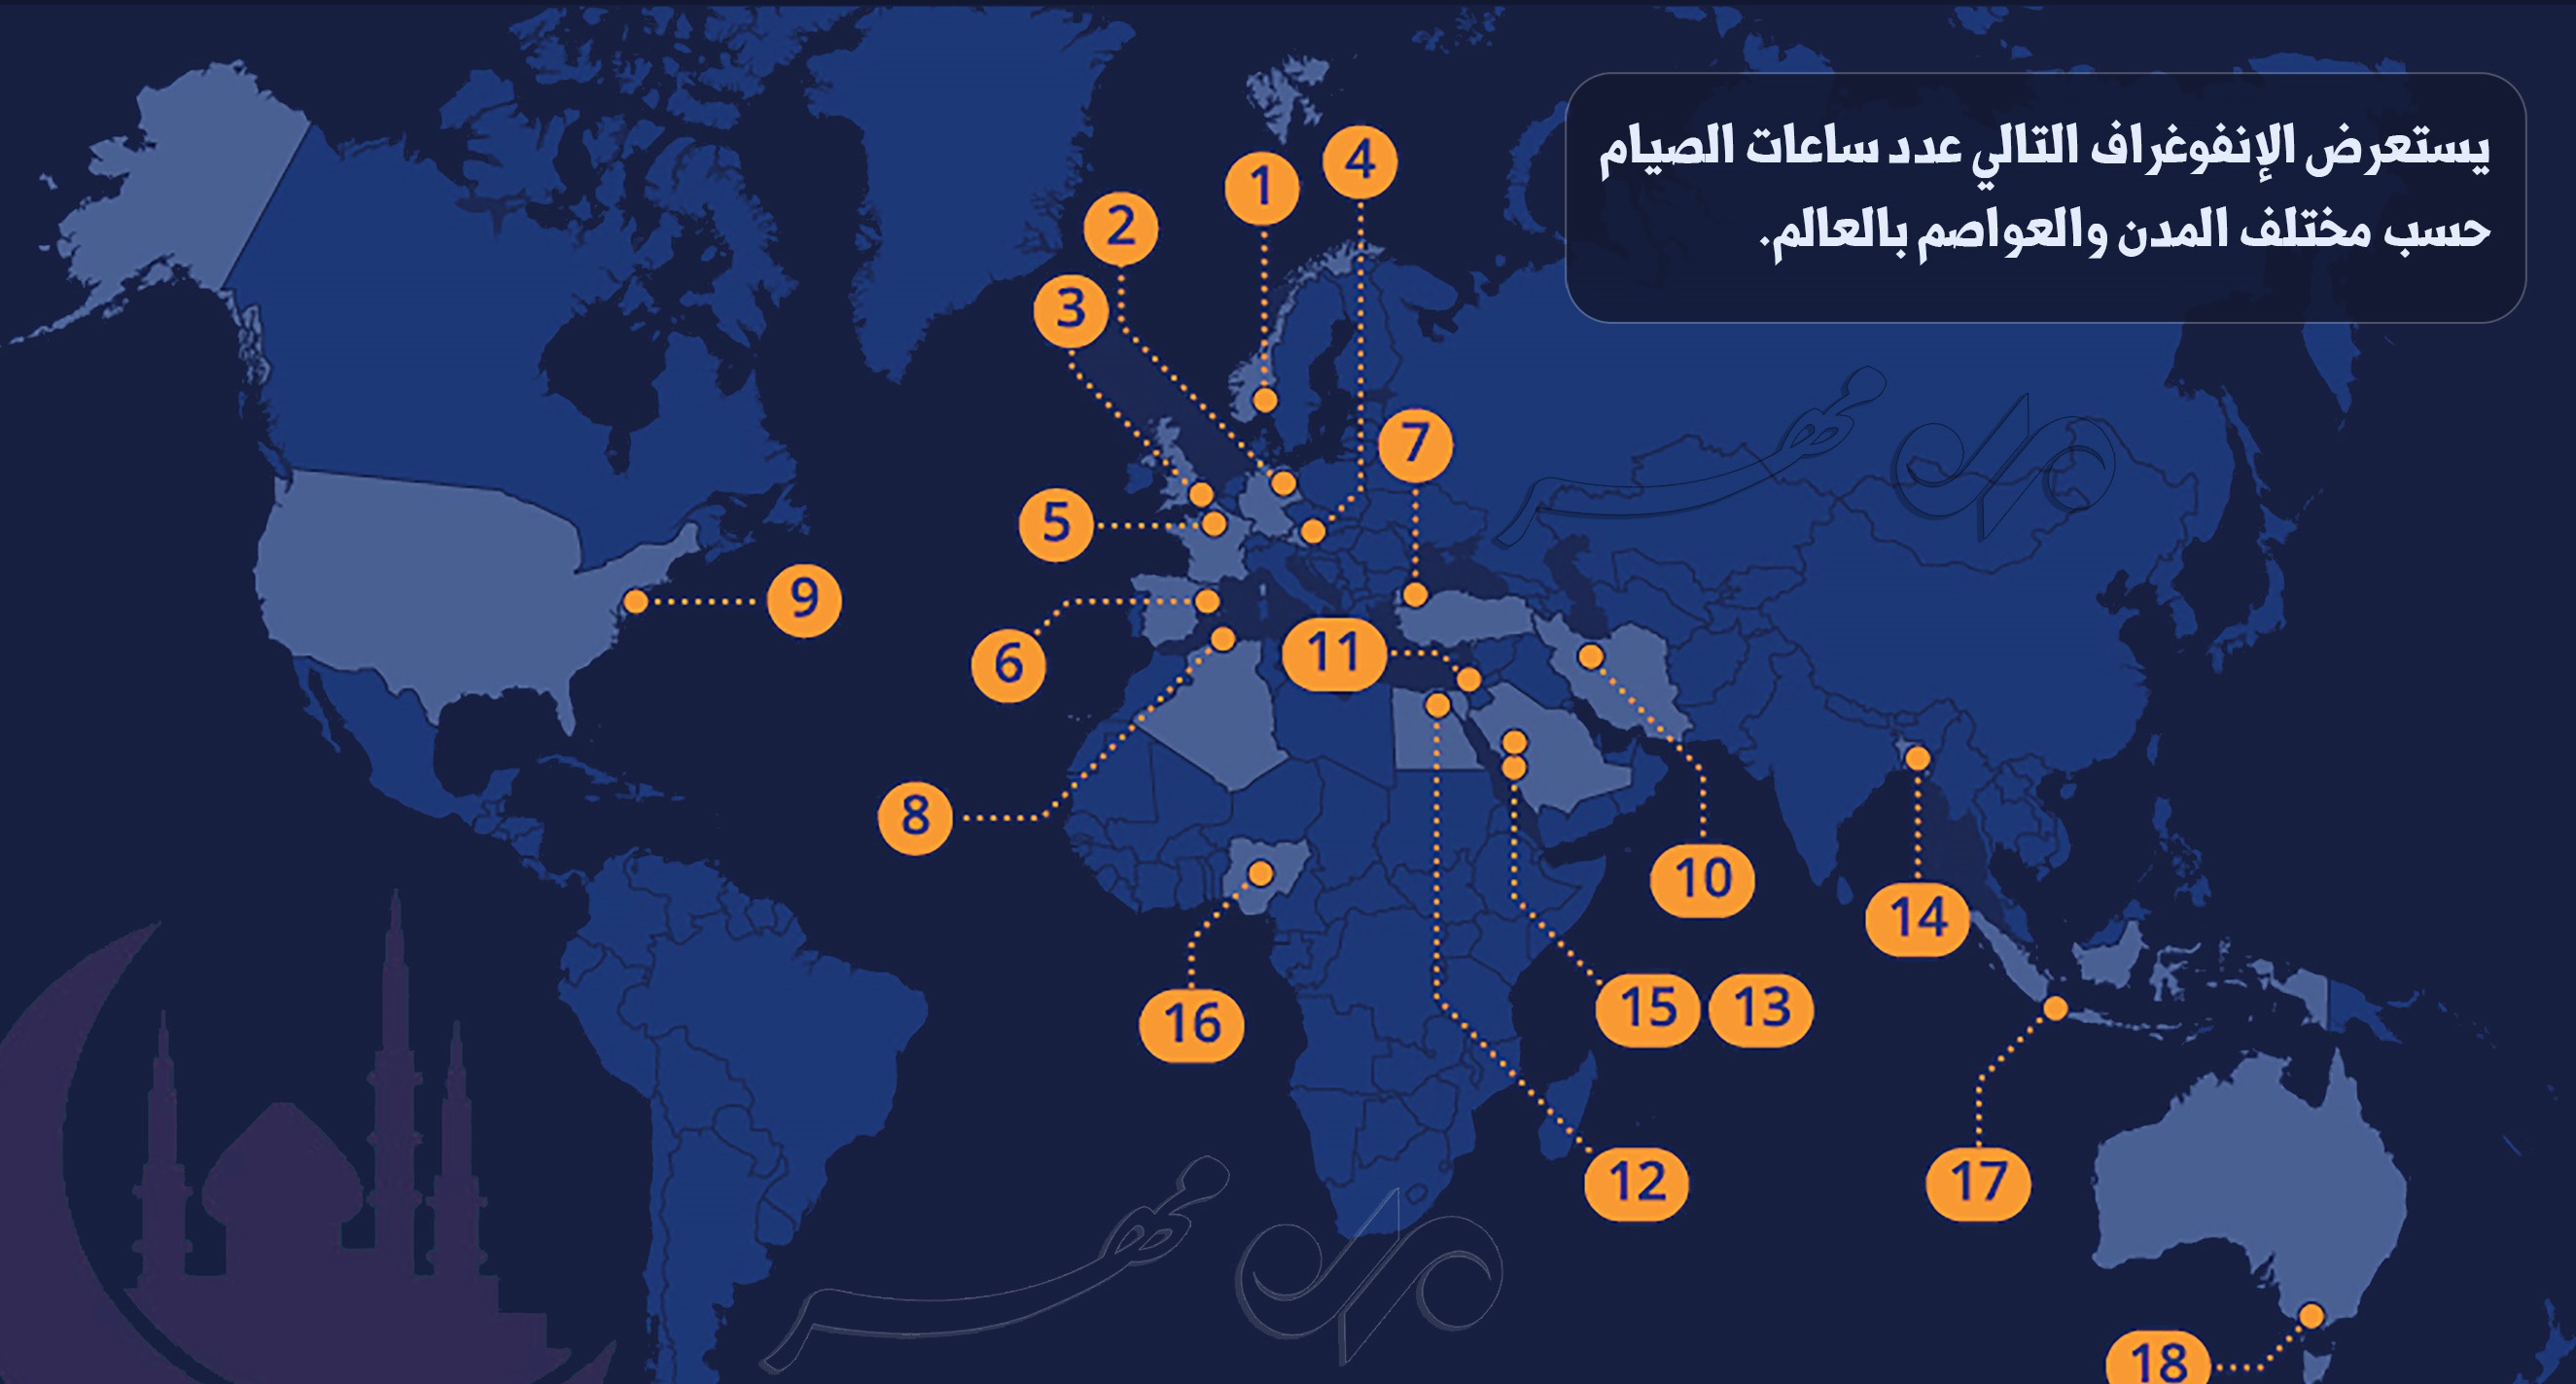 أنفوغراف: كم ساعة يصوم المسلمون في مختلف بقاع العالم؟